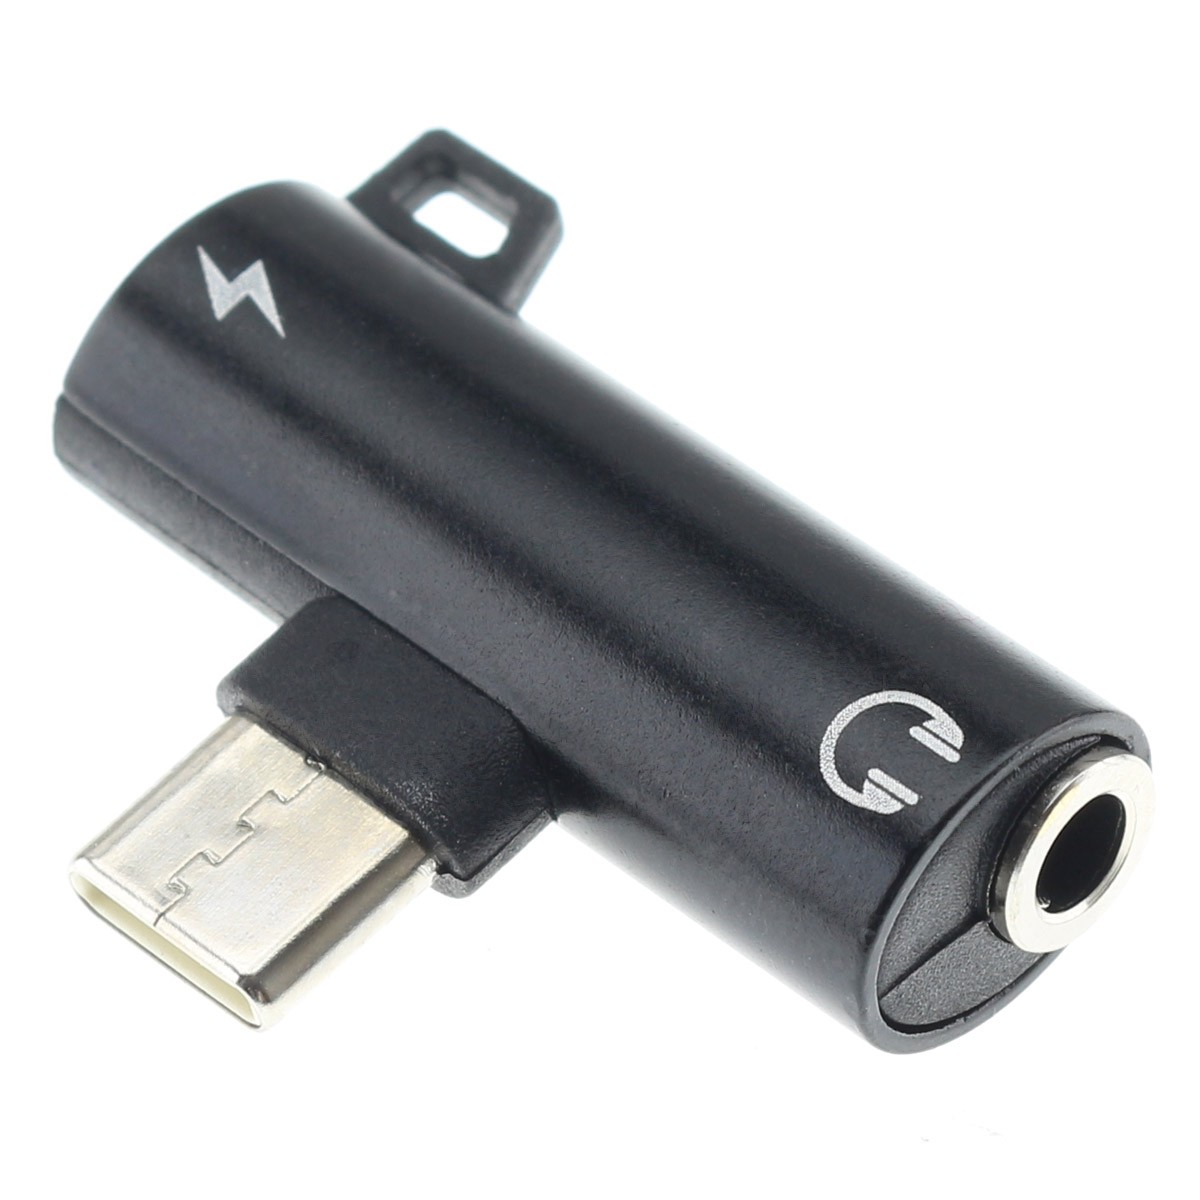 Câble adaptateur USB-C mâle vers jack 3,5 mm mâle aux audio noir